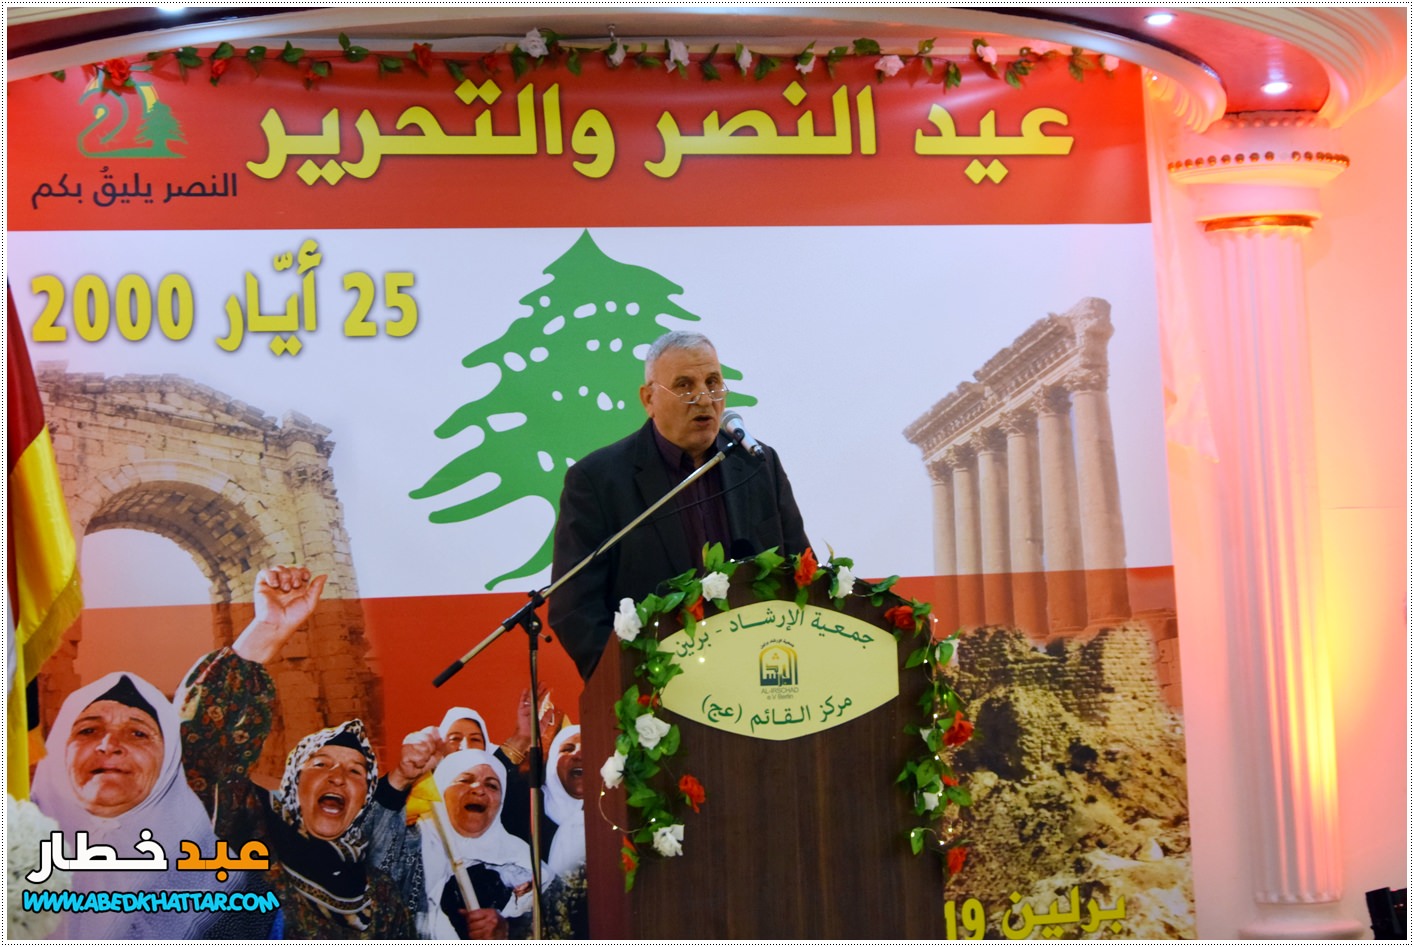 جمعية الإرشاد والجمعيات اللبنانية اقامت احتفال بمناسبة عيد النصر والتحرير